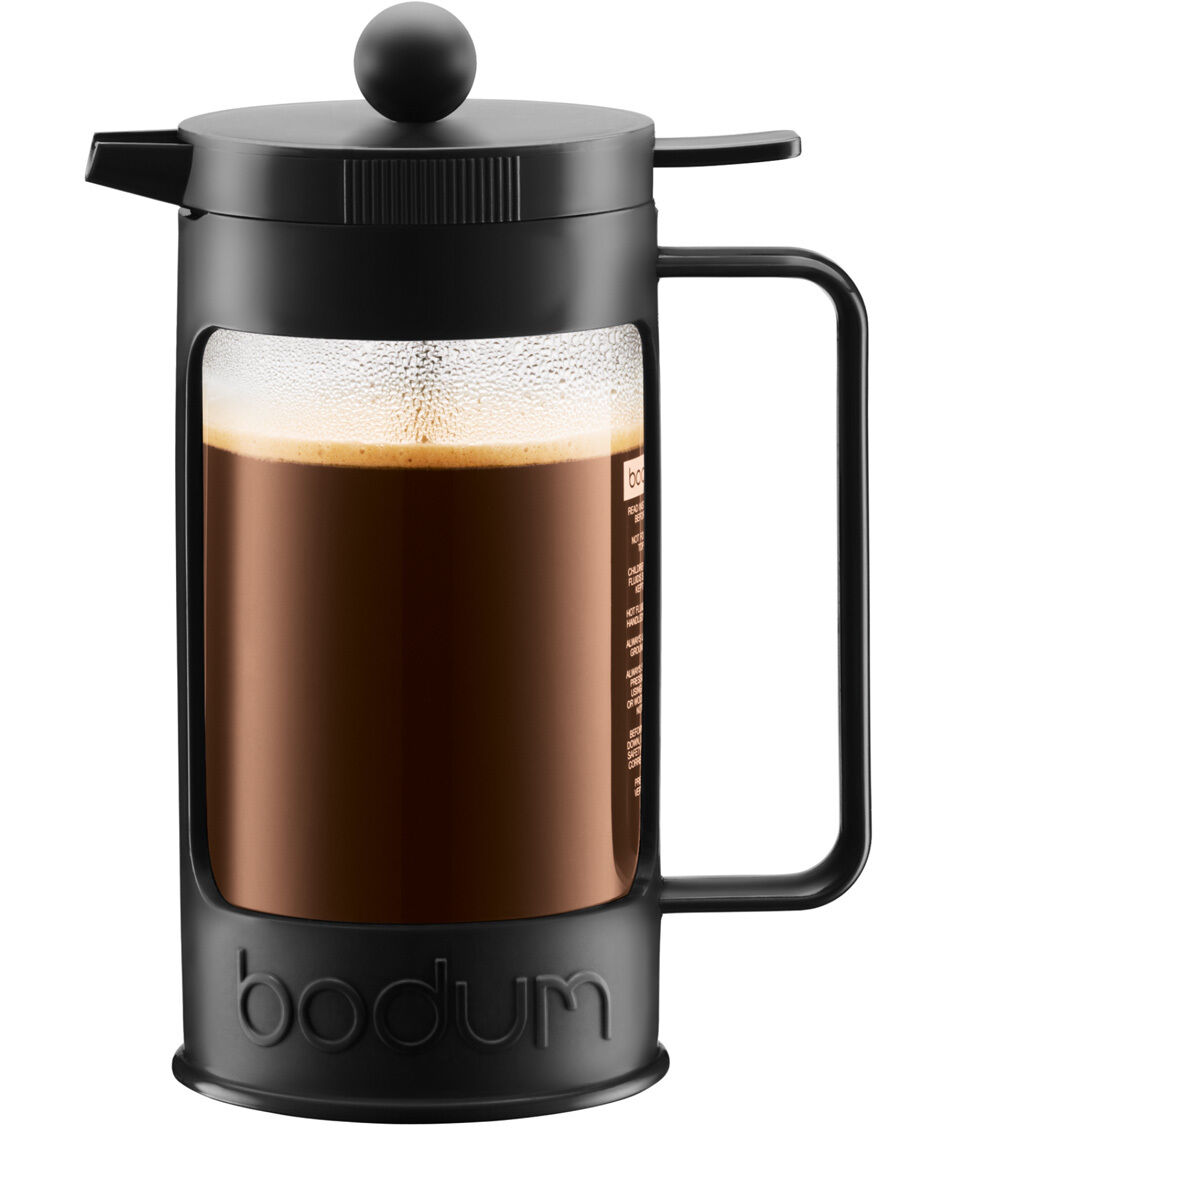 Bild zu Kaffeebereiter Bodum  Bean schon ab 9,99€ (Vergleich: 22,99€)